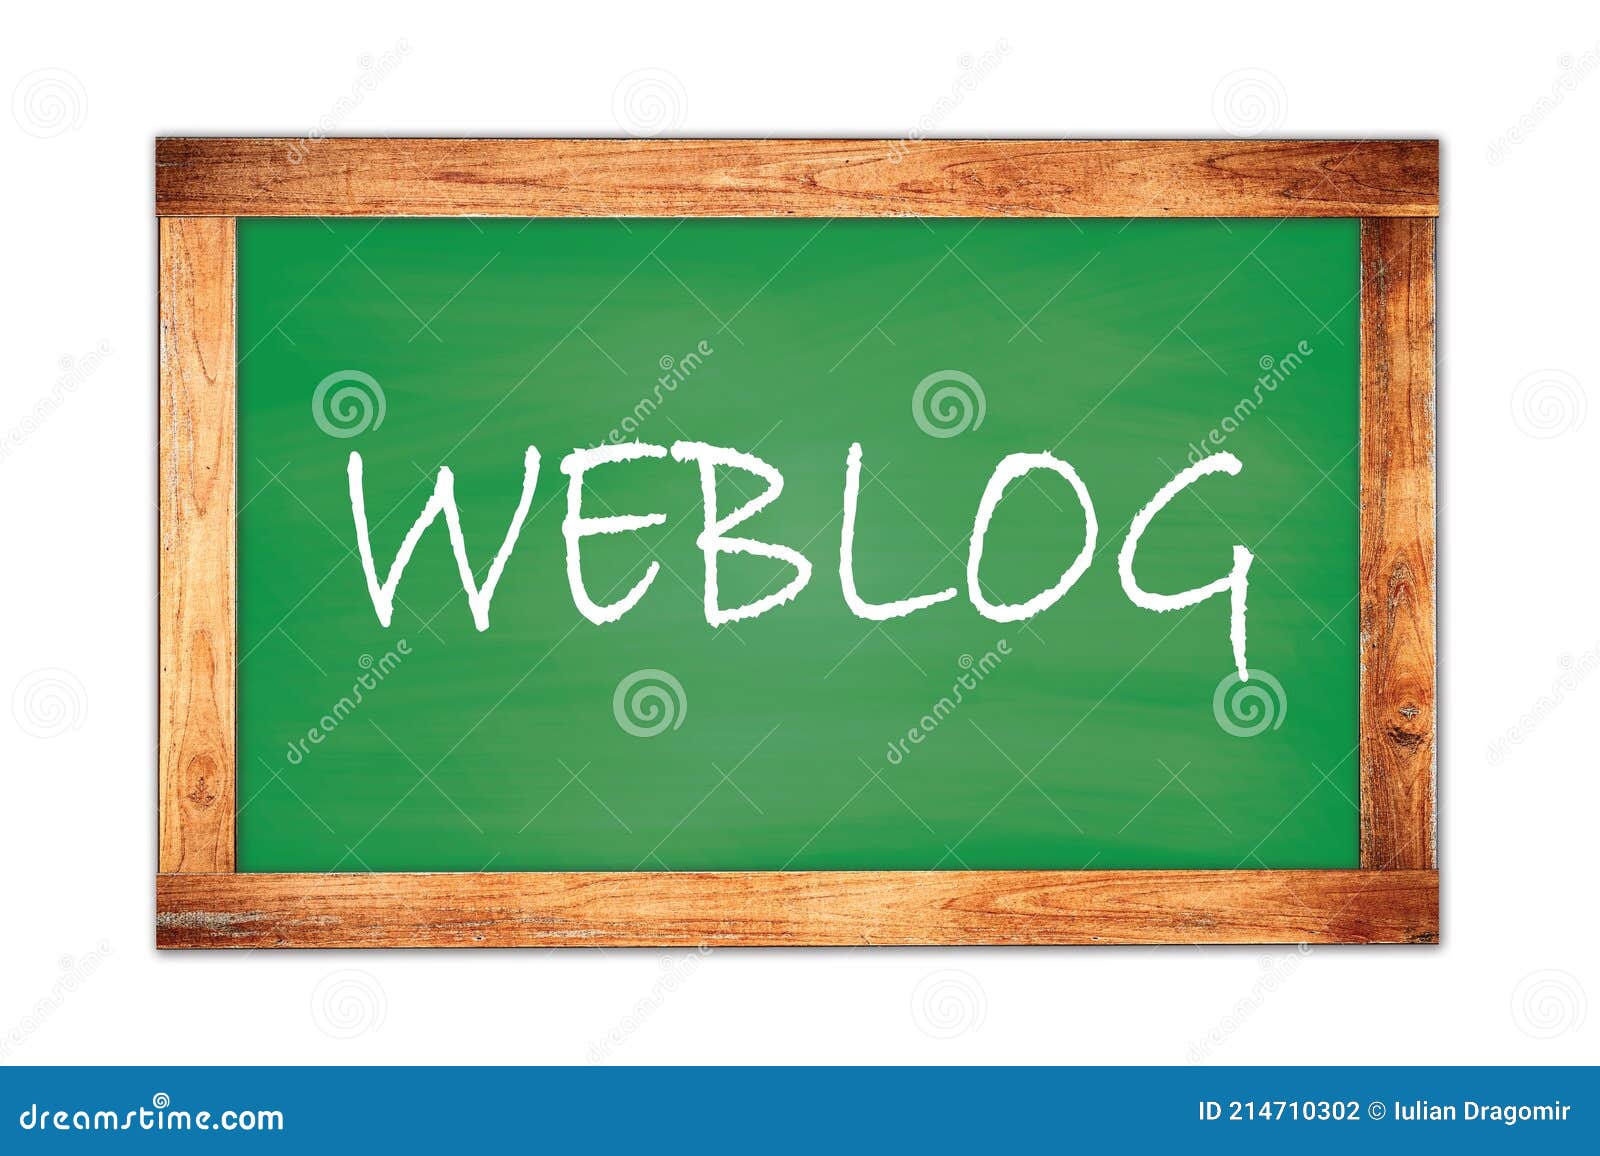 weblog text written on green school board